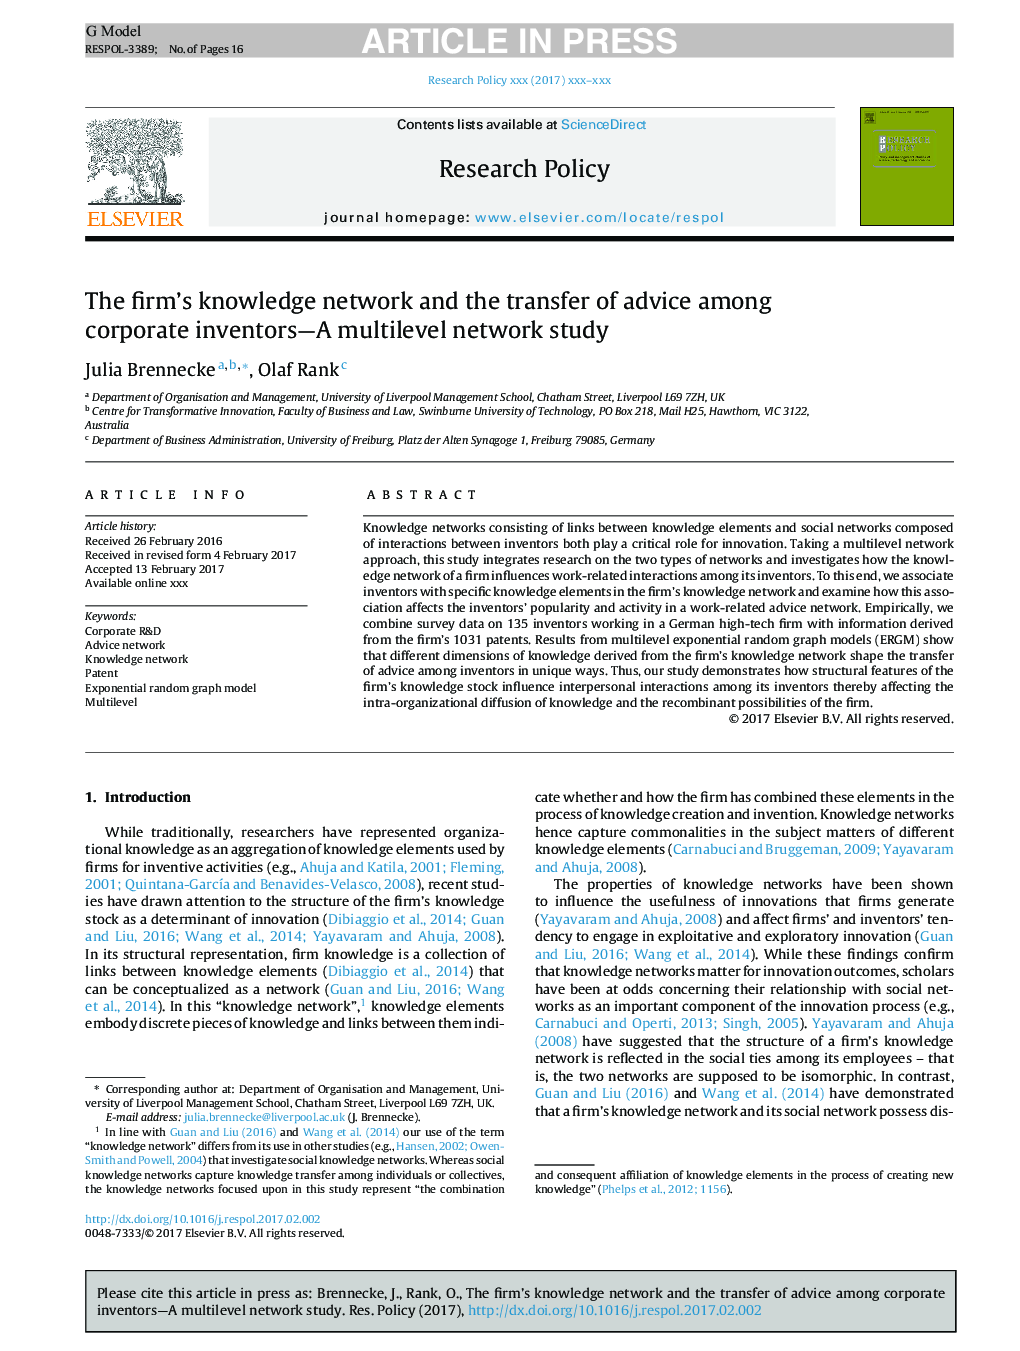 شبکه دانش شرکت و انتقال مشاوره در بین مخترعان شرکت - یک مطالعه شبکه چند سطحی 